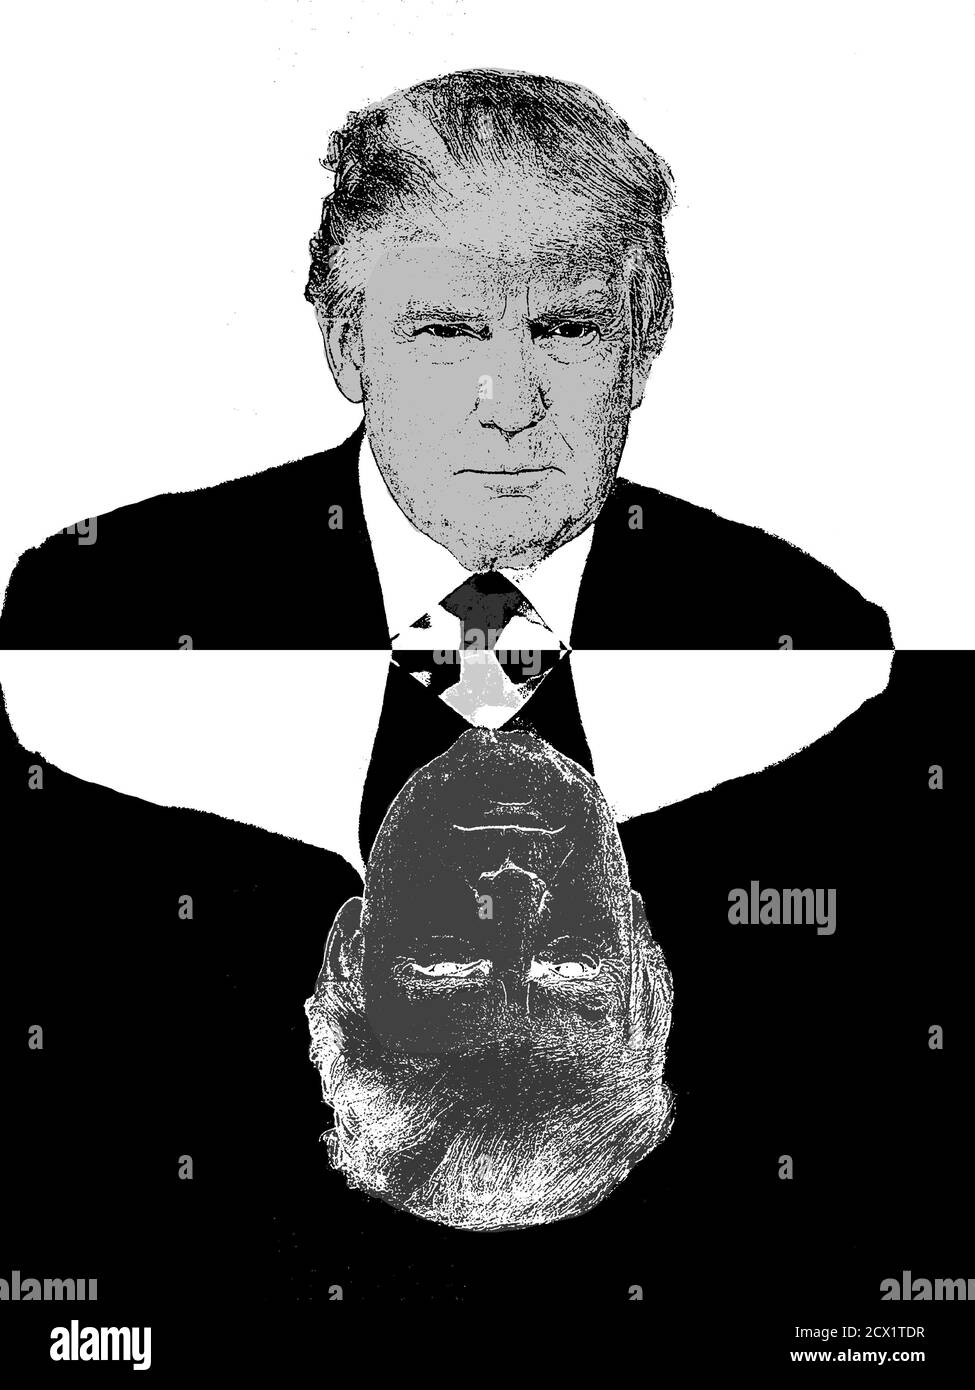 Donald Trump sieht sich selbst gegenüber, schwarz-weiße Illustration im Cartoon-Stil. Lügen von Trump, Doppelpersönlichkeit, ambivalent. Scheitern von Trump. trump 2024 Stockfoto